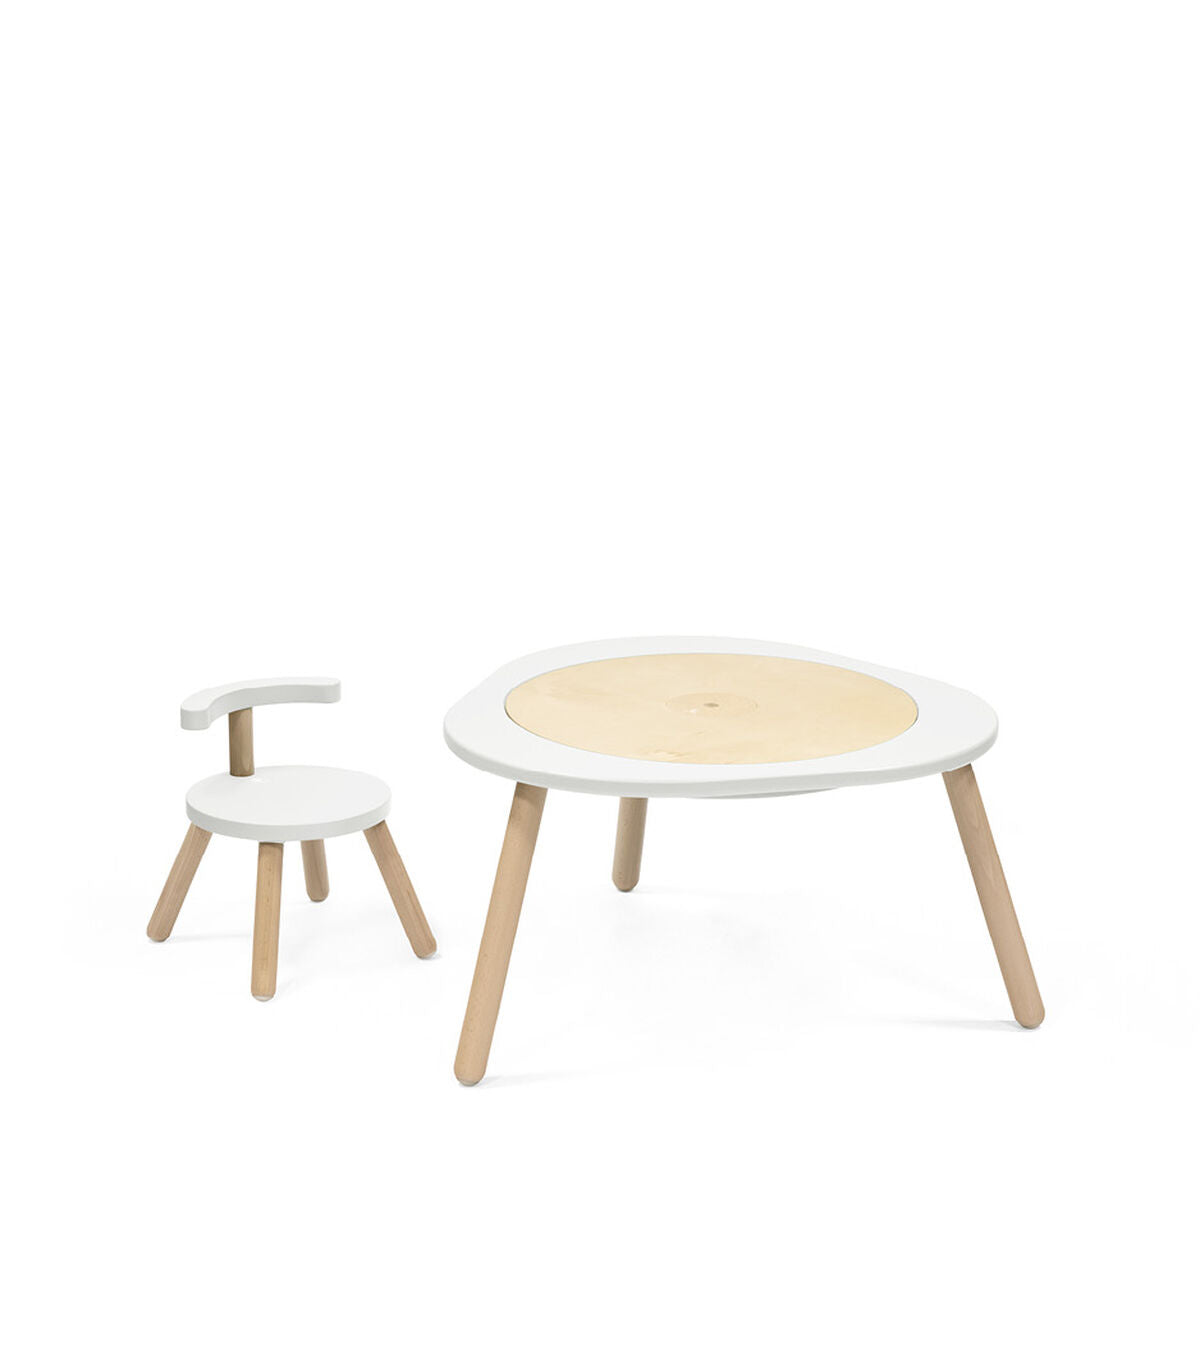 Stokke™ MuTable™ Chair V2 White